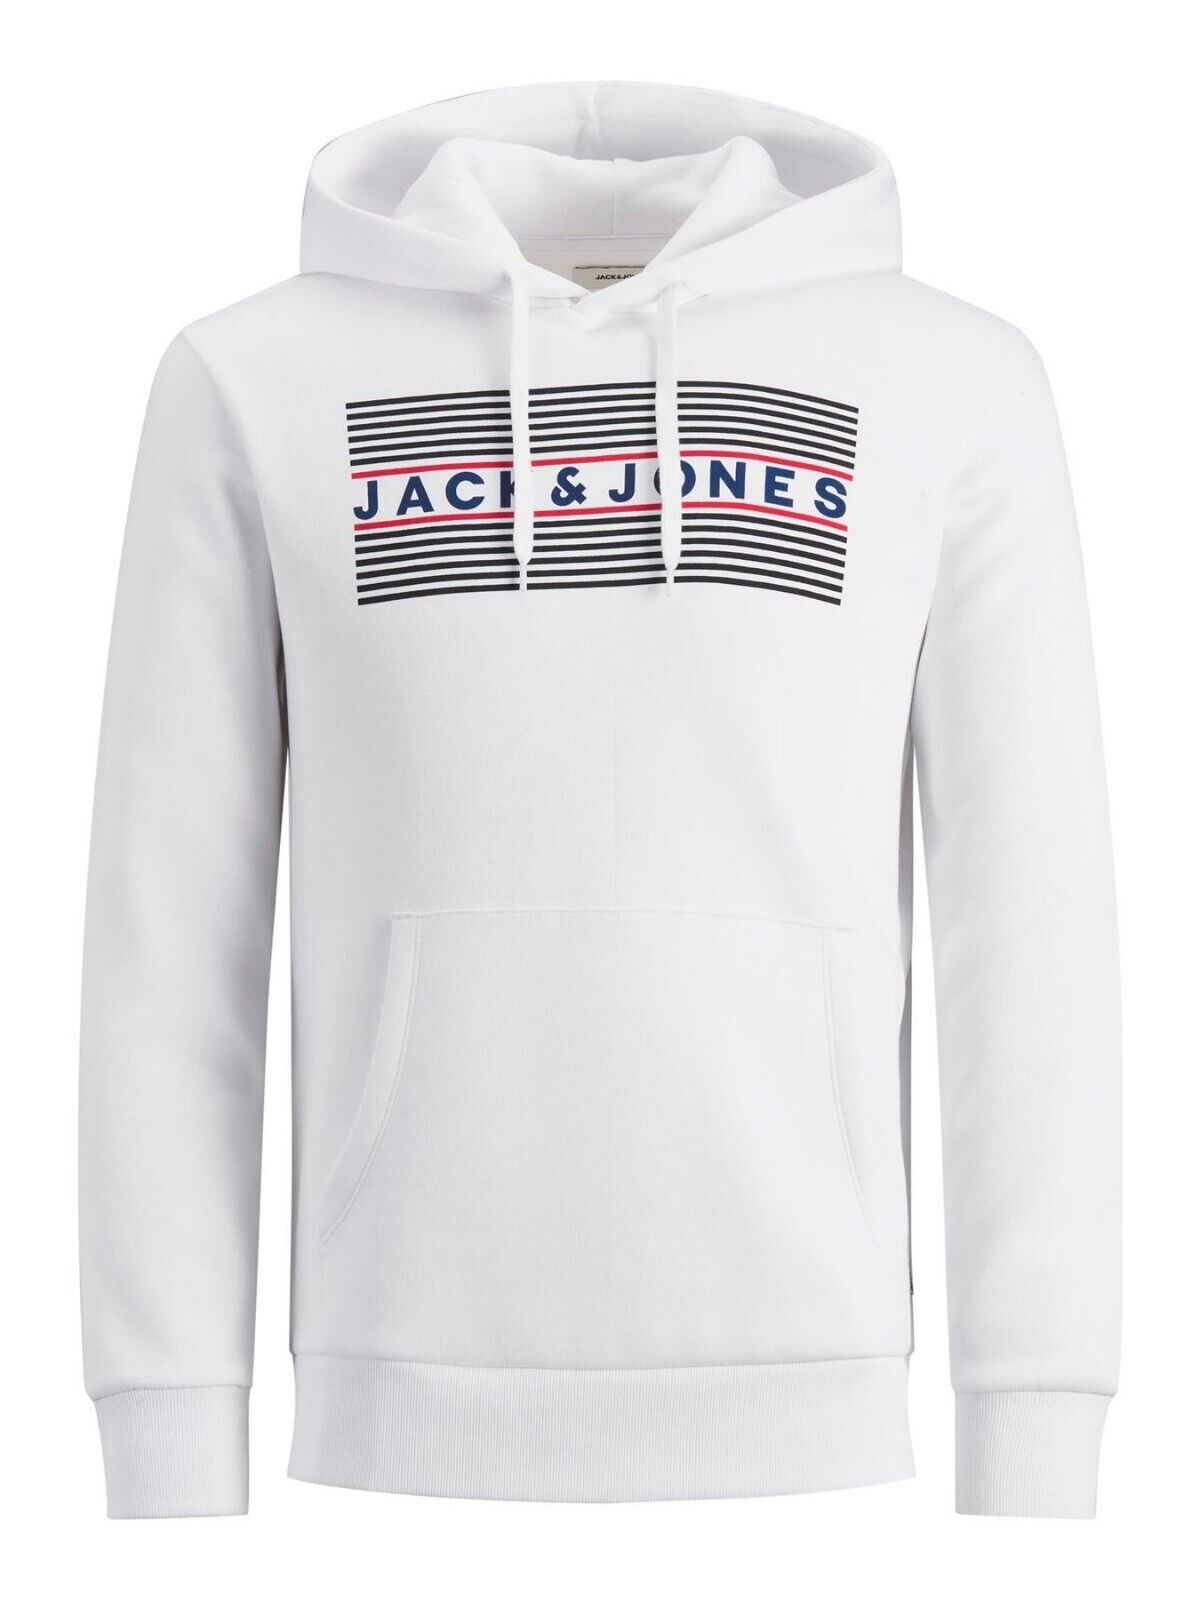 Mens Hoodie Jack & Jones Branded Logo Hooded Sweatshirt Pullover Top XS-3XL